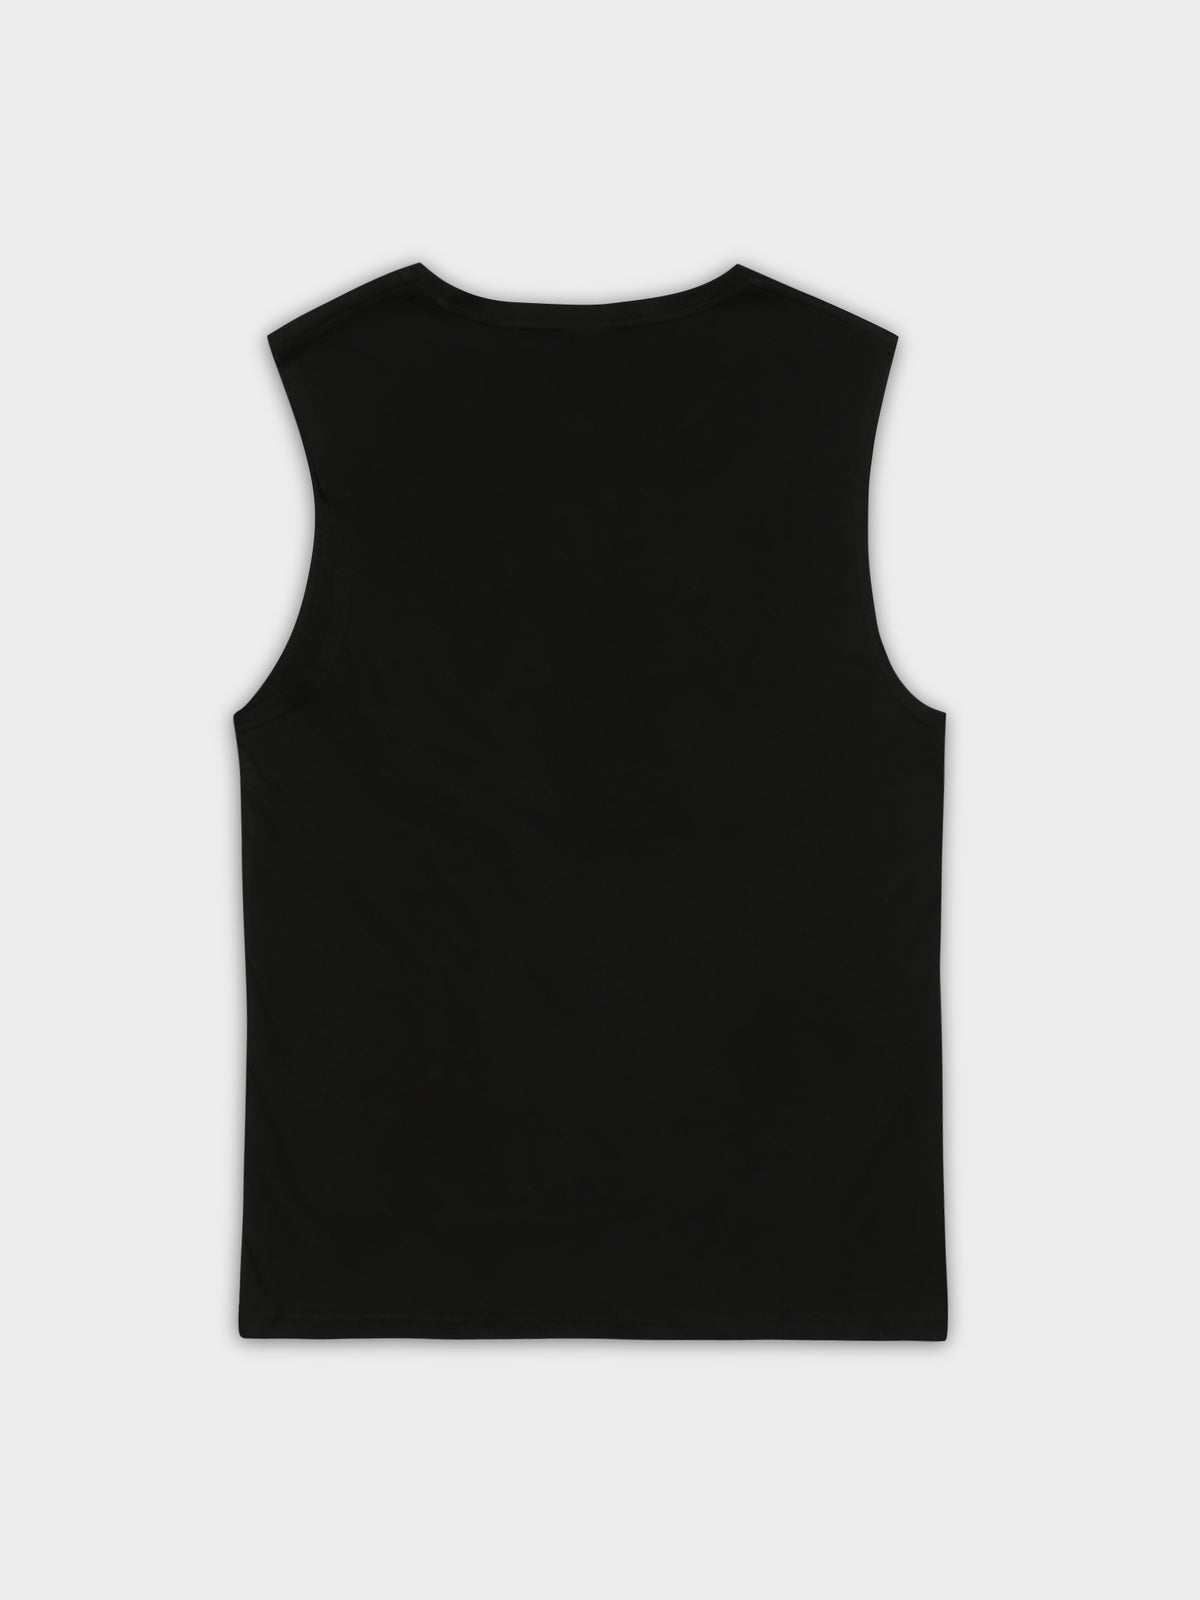 Heisman Muscle T-Shirt in Black